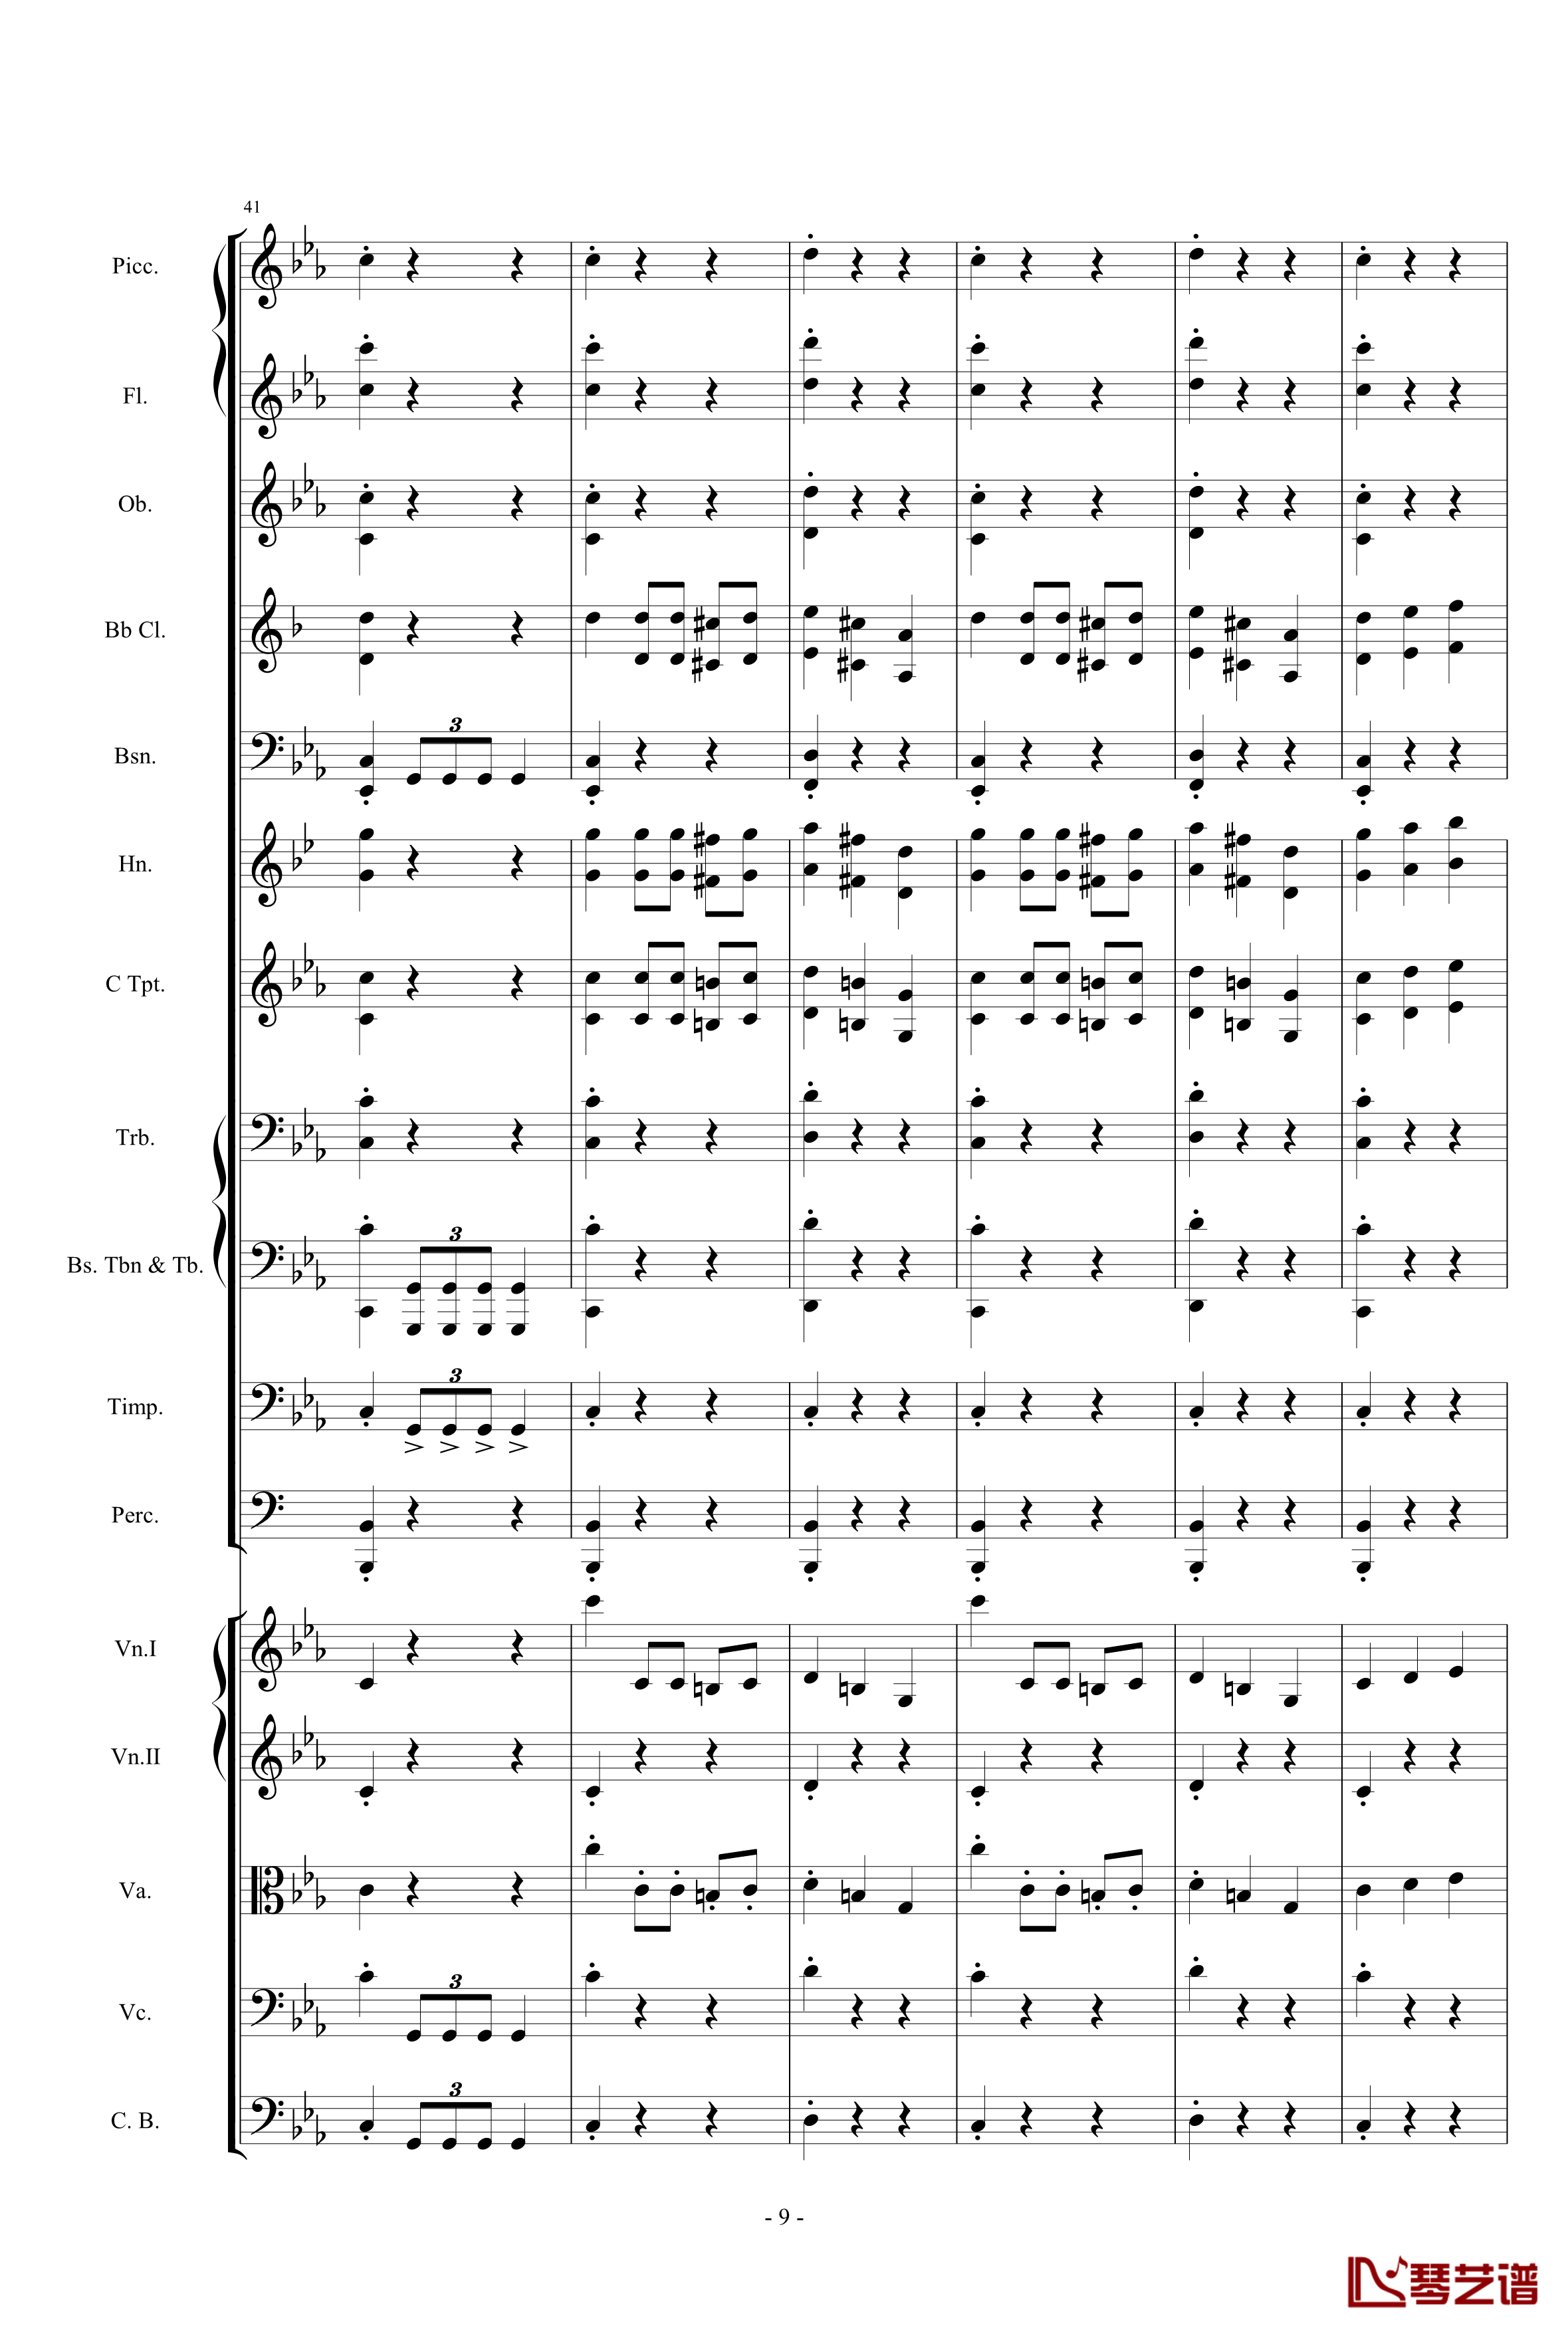 愤怒的小鸟交响曲第三乐章Op.5 no.3钢琴谱-105725789